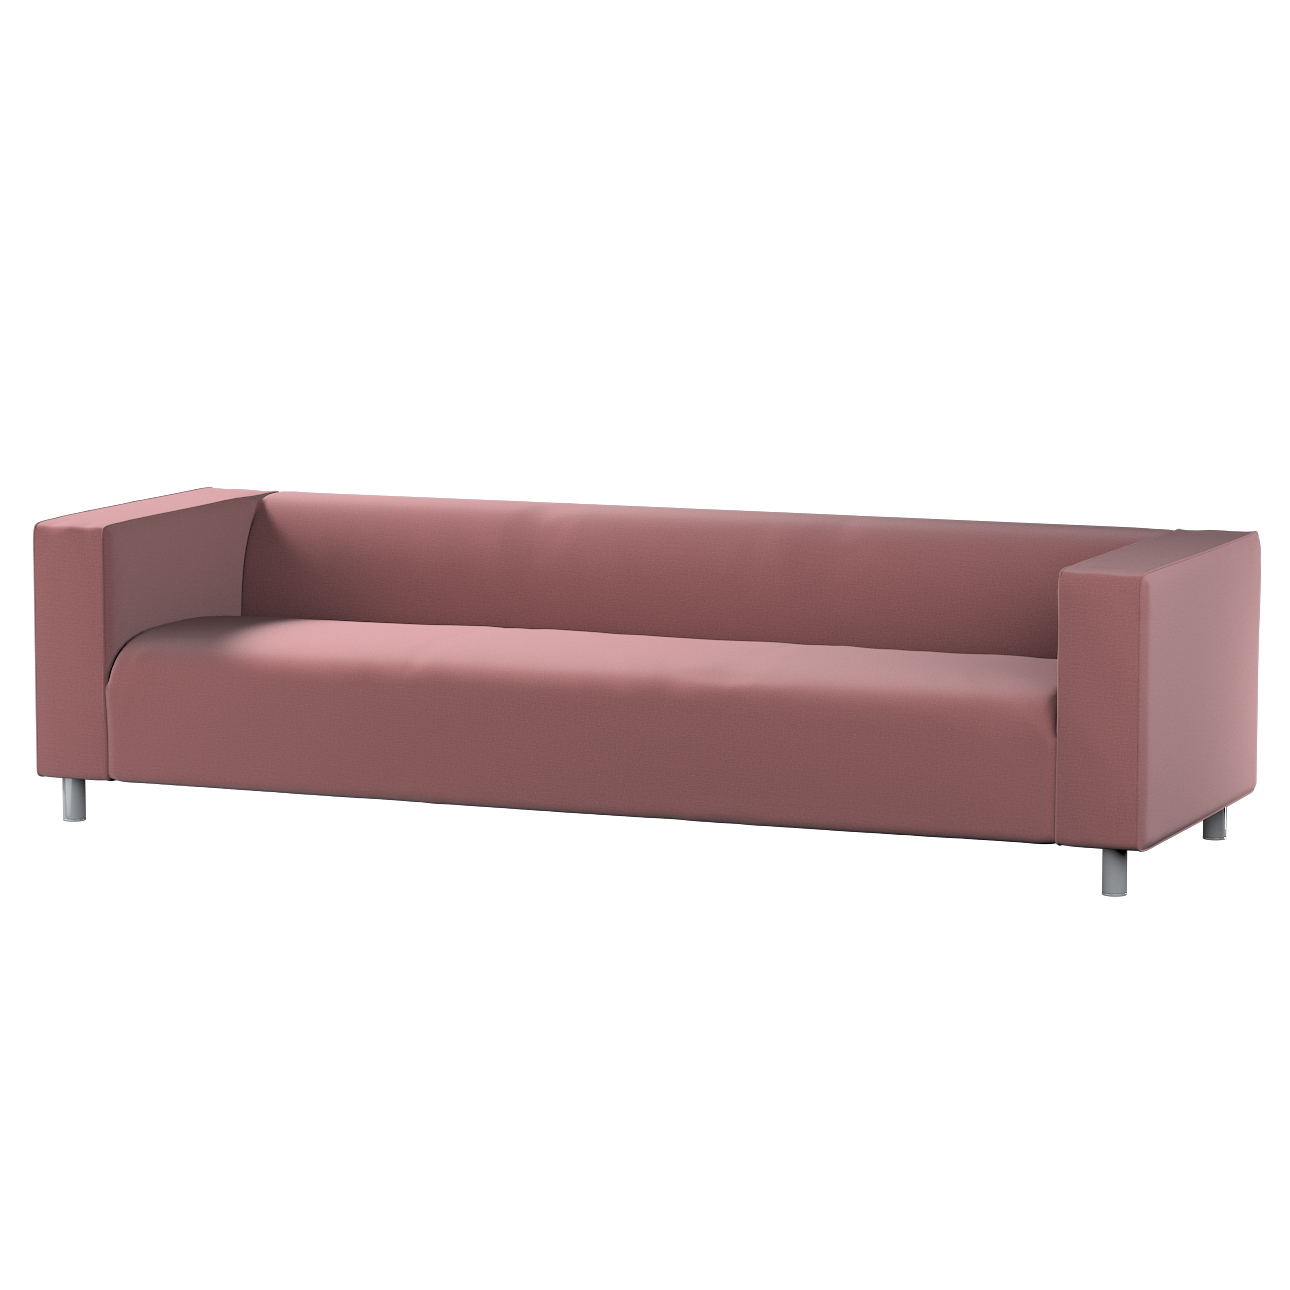 Bezug für Klippan 4-Sitzer Sofa, violett, Bezug für Klippan 4-Sitzer, Ingri günstig online kaufen